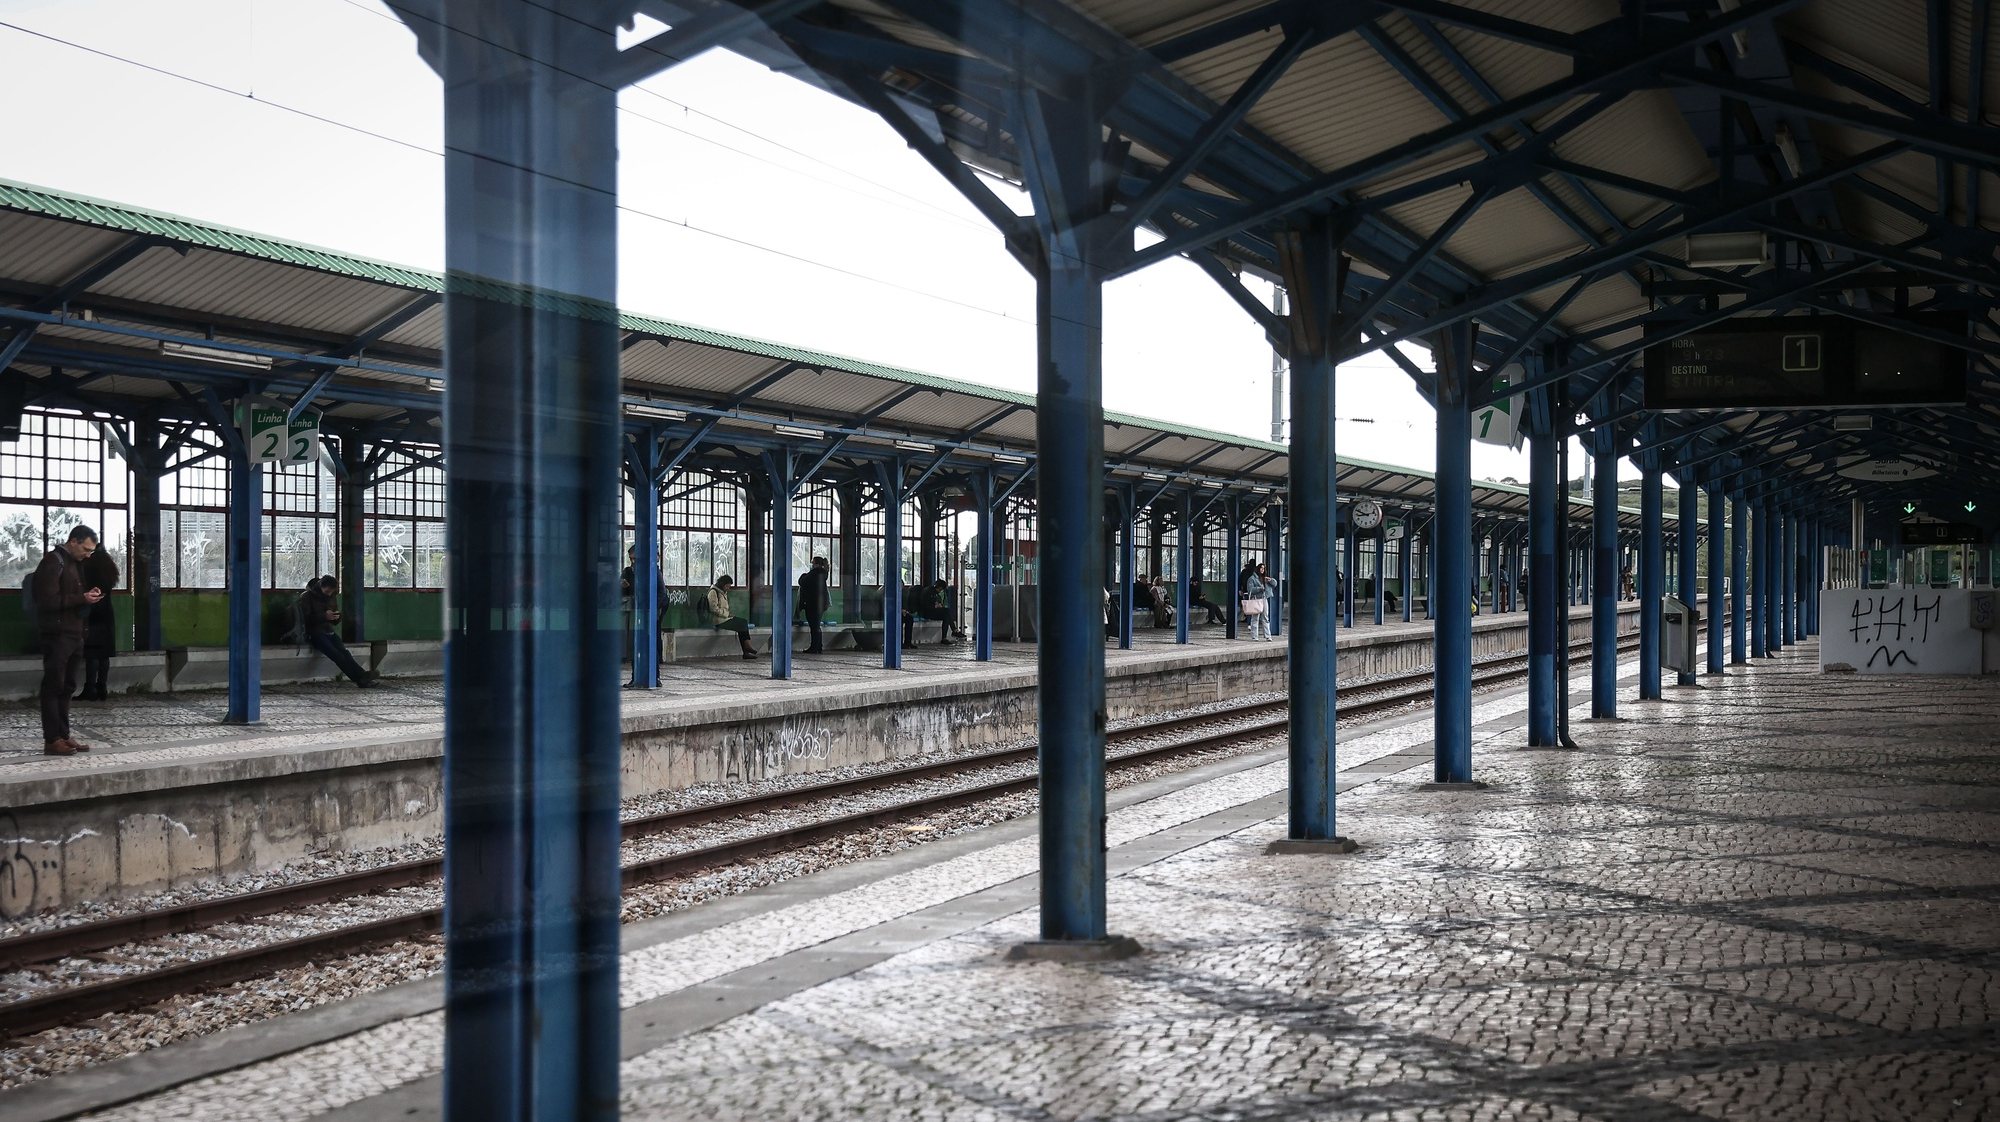 Greve de trabalhadores da CP e das várias empresas da IP - infraestruturas de Portugal, na estação de comboios da Portela de Sintra, em Sintra, 28 de fevereiro de 2023. RODRIGO ANTUNES/LUSA